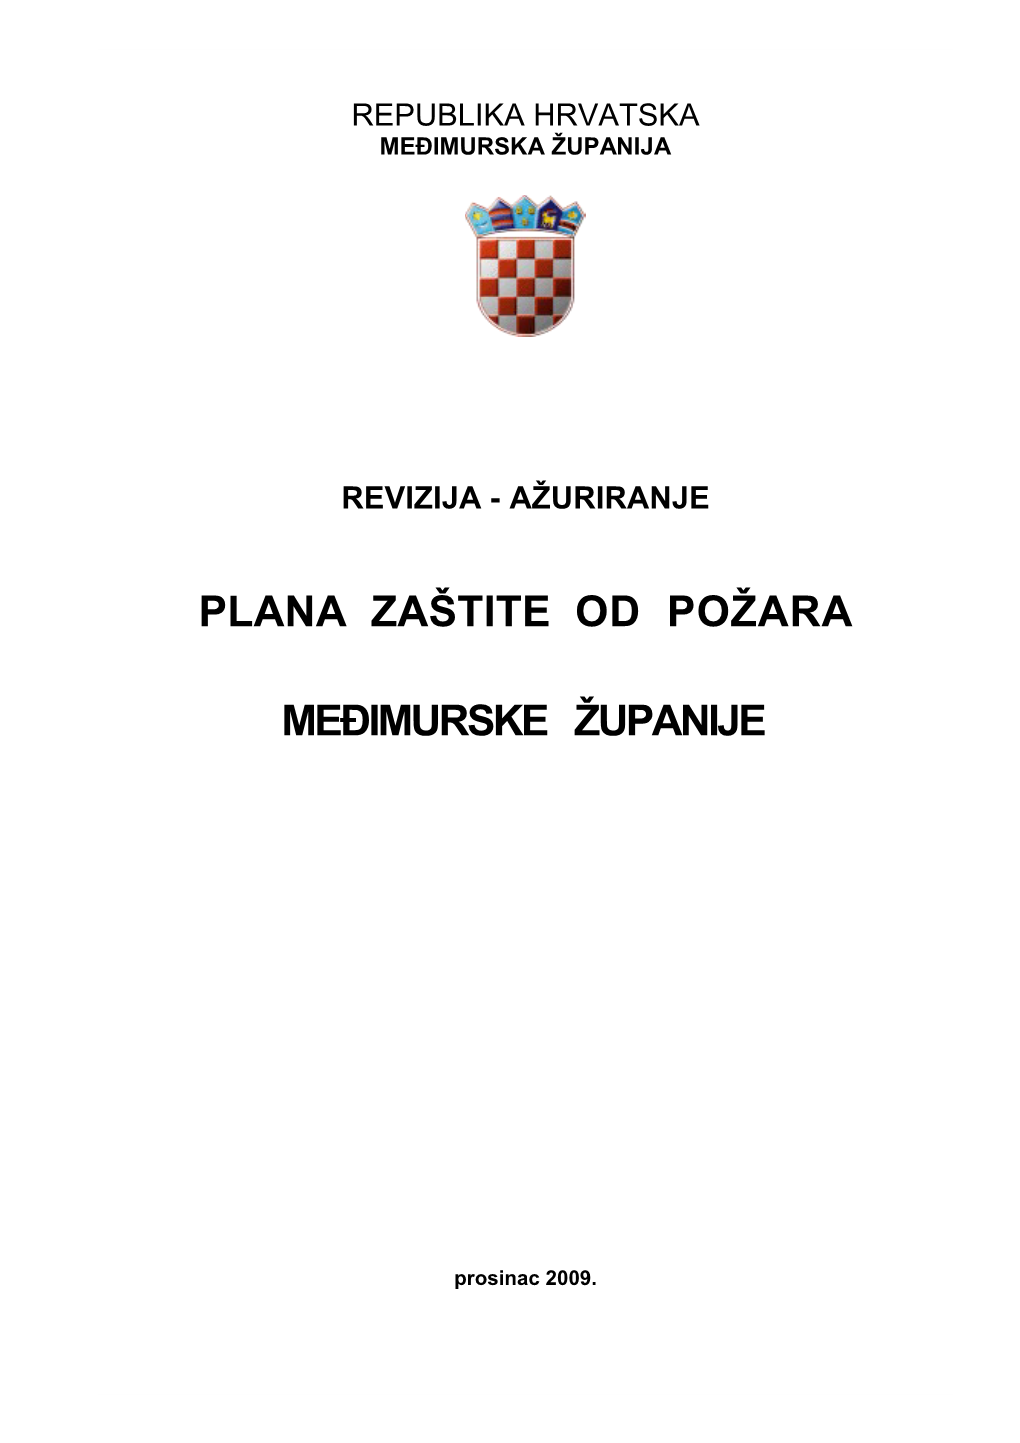 Republika Hrvatska Međimurska Županija